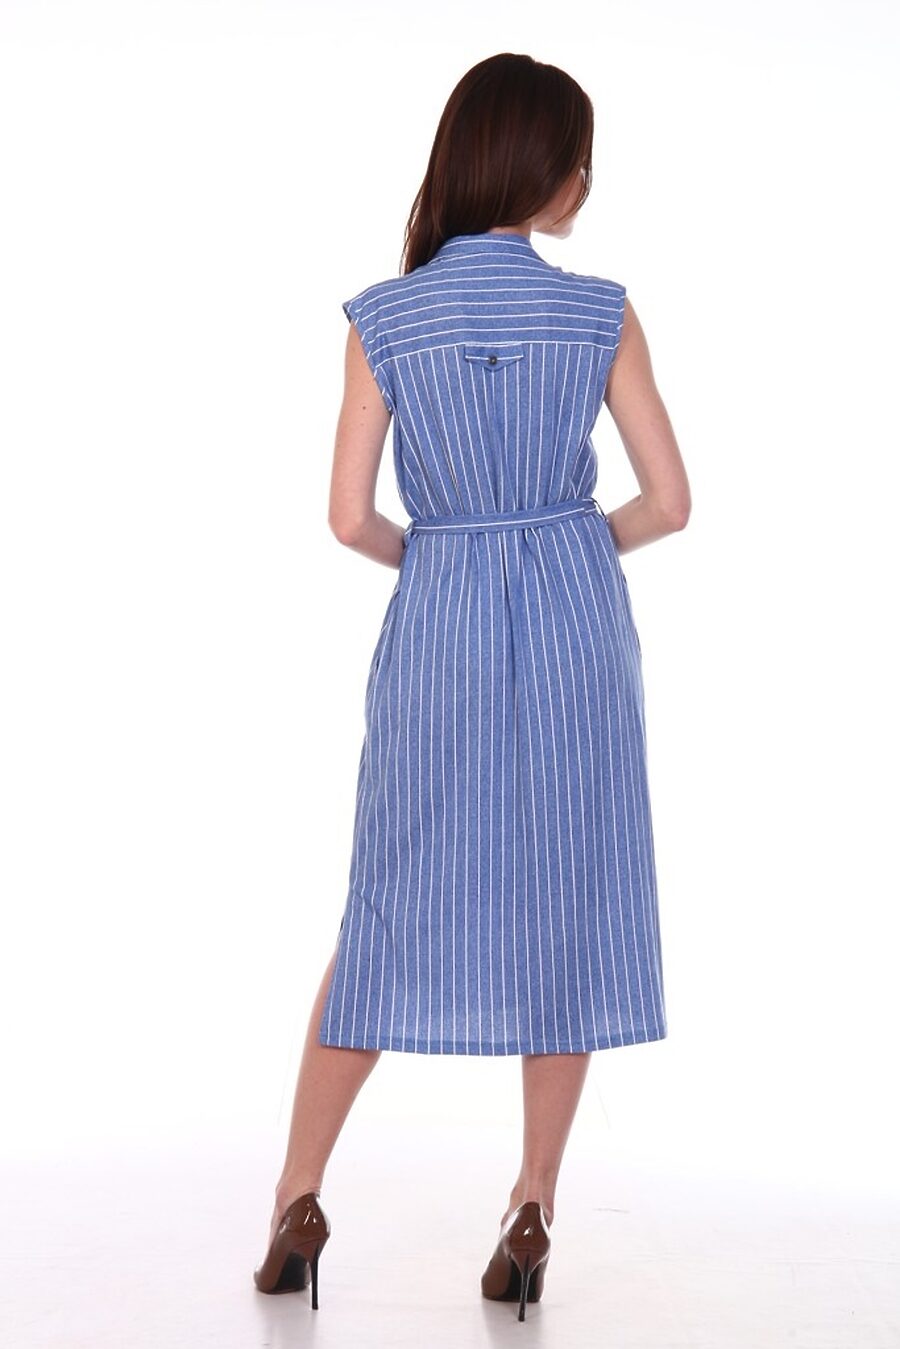 Платье MODELLINI (742301), купить в Moyo.moda